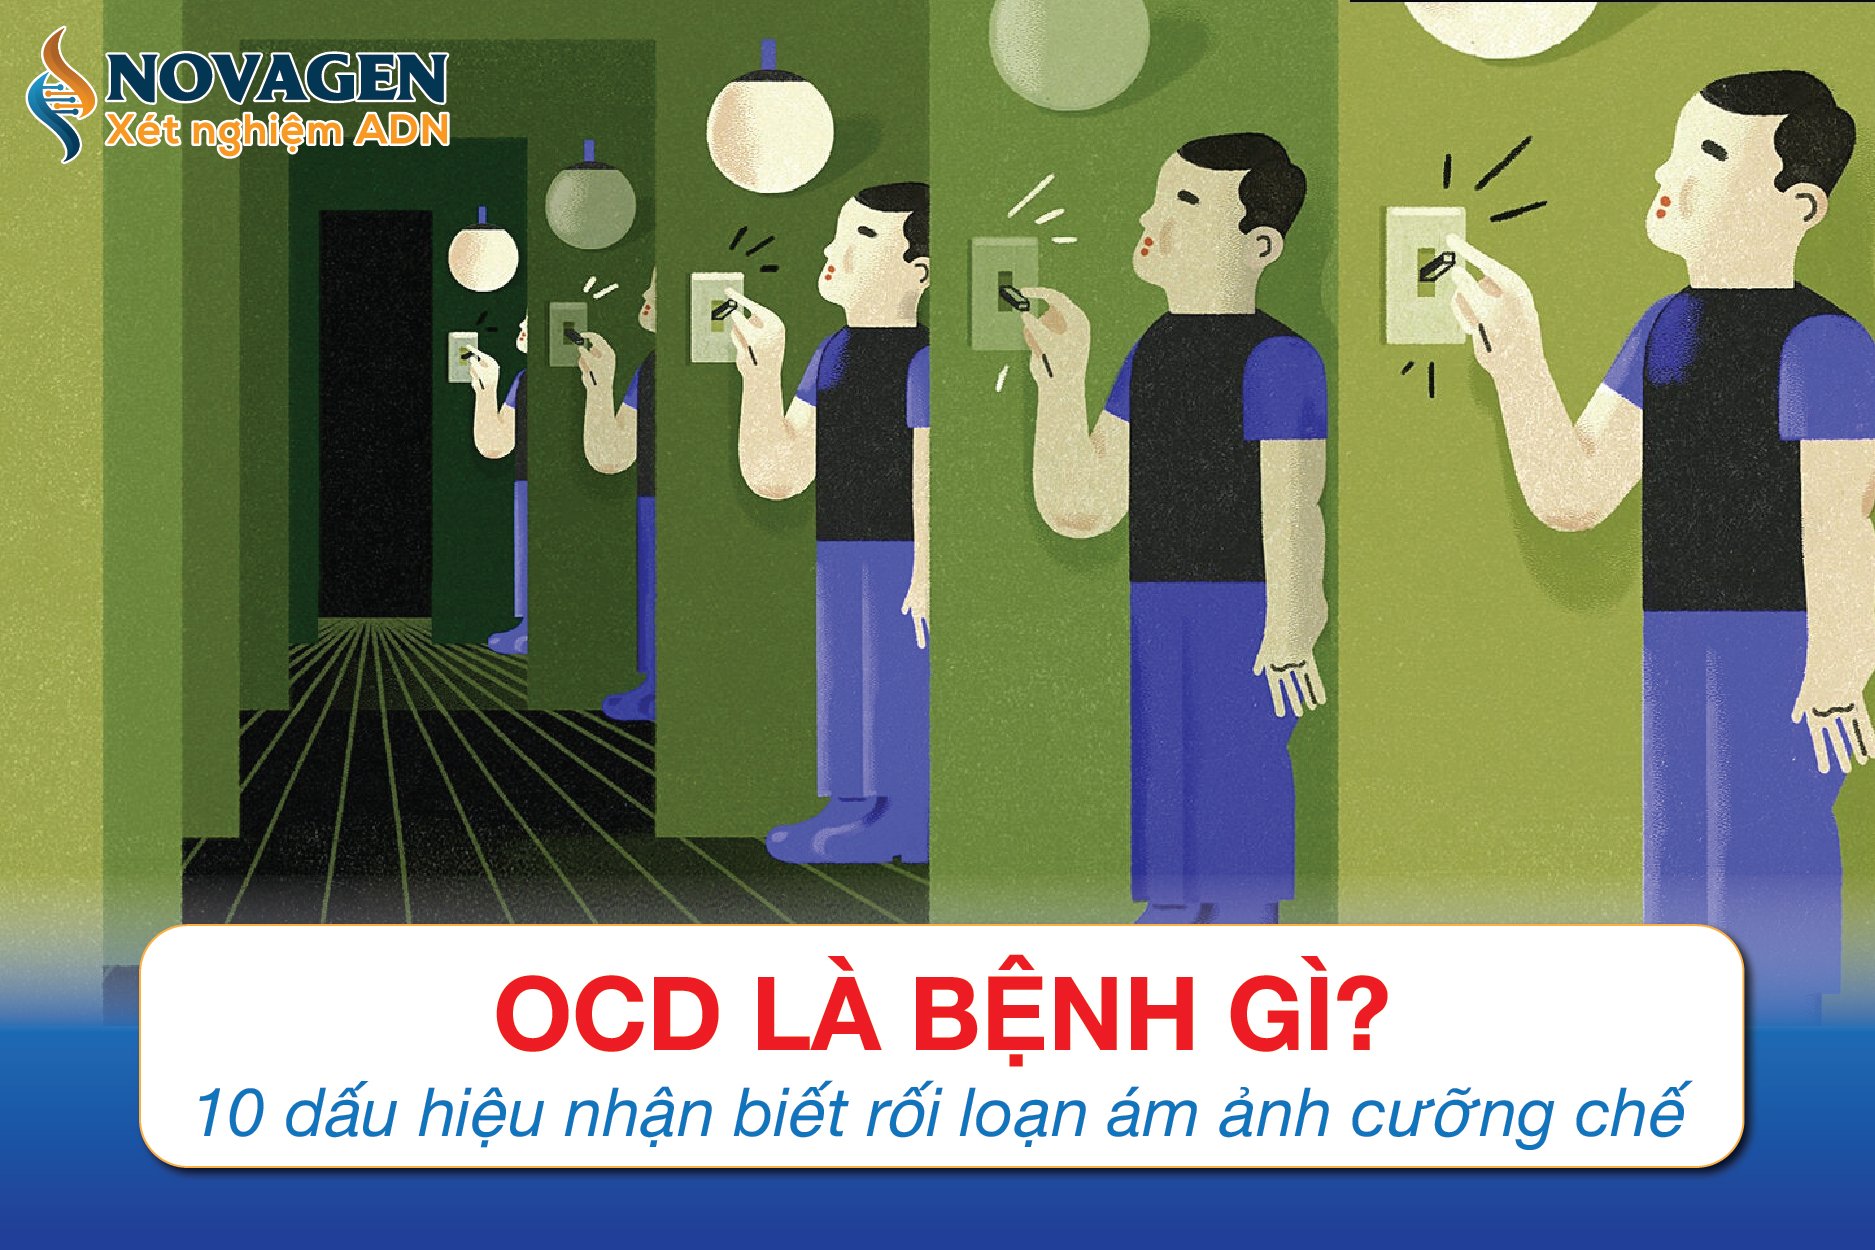 OCD Là Bệnh Gì? 10 Dấu Hiệu Nhận Biết Rối Loạn Ám Ảnh Cưỡng Chế 